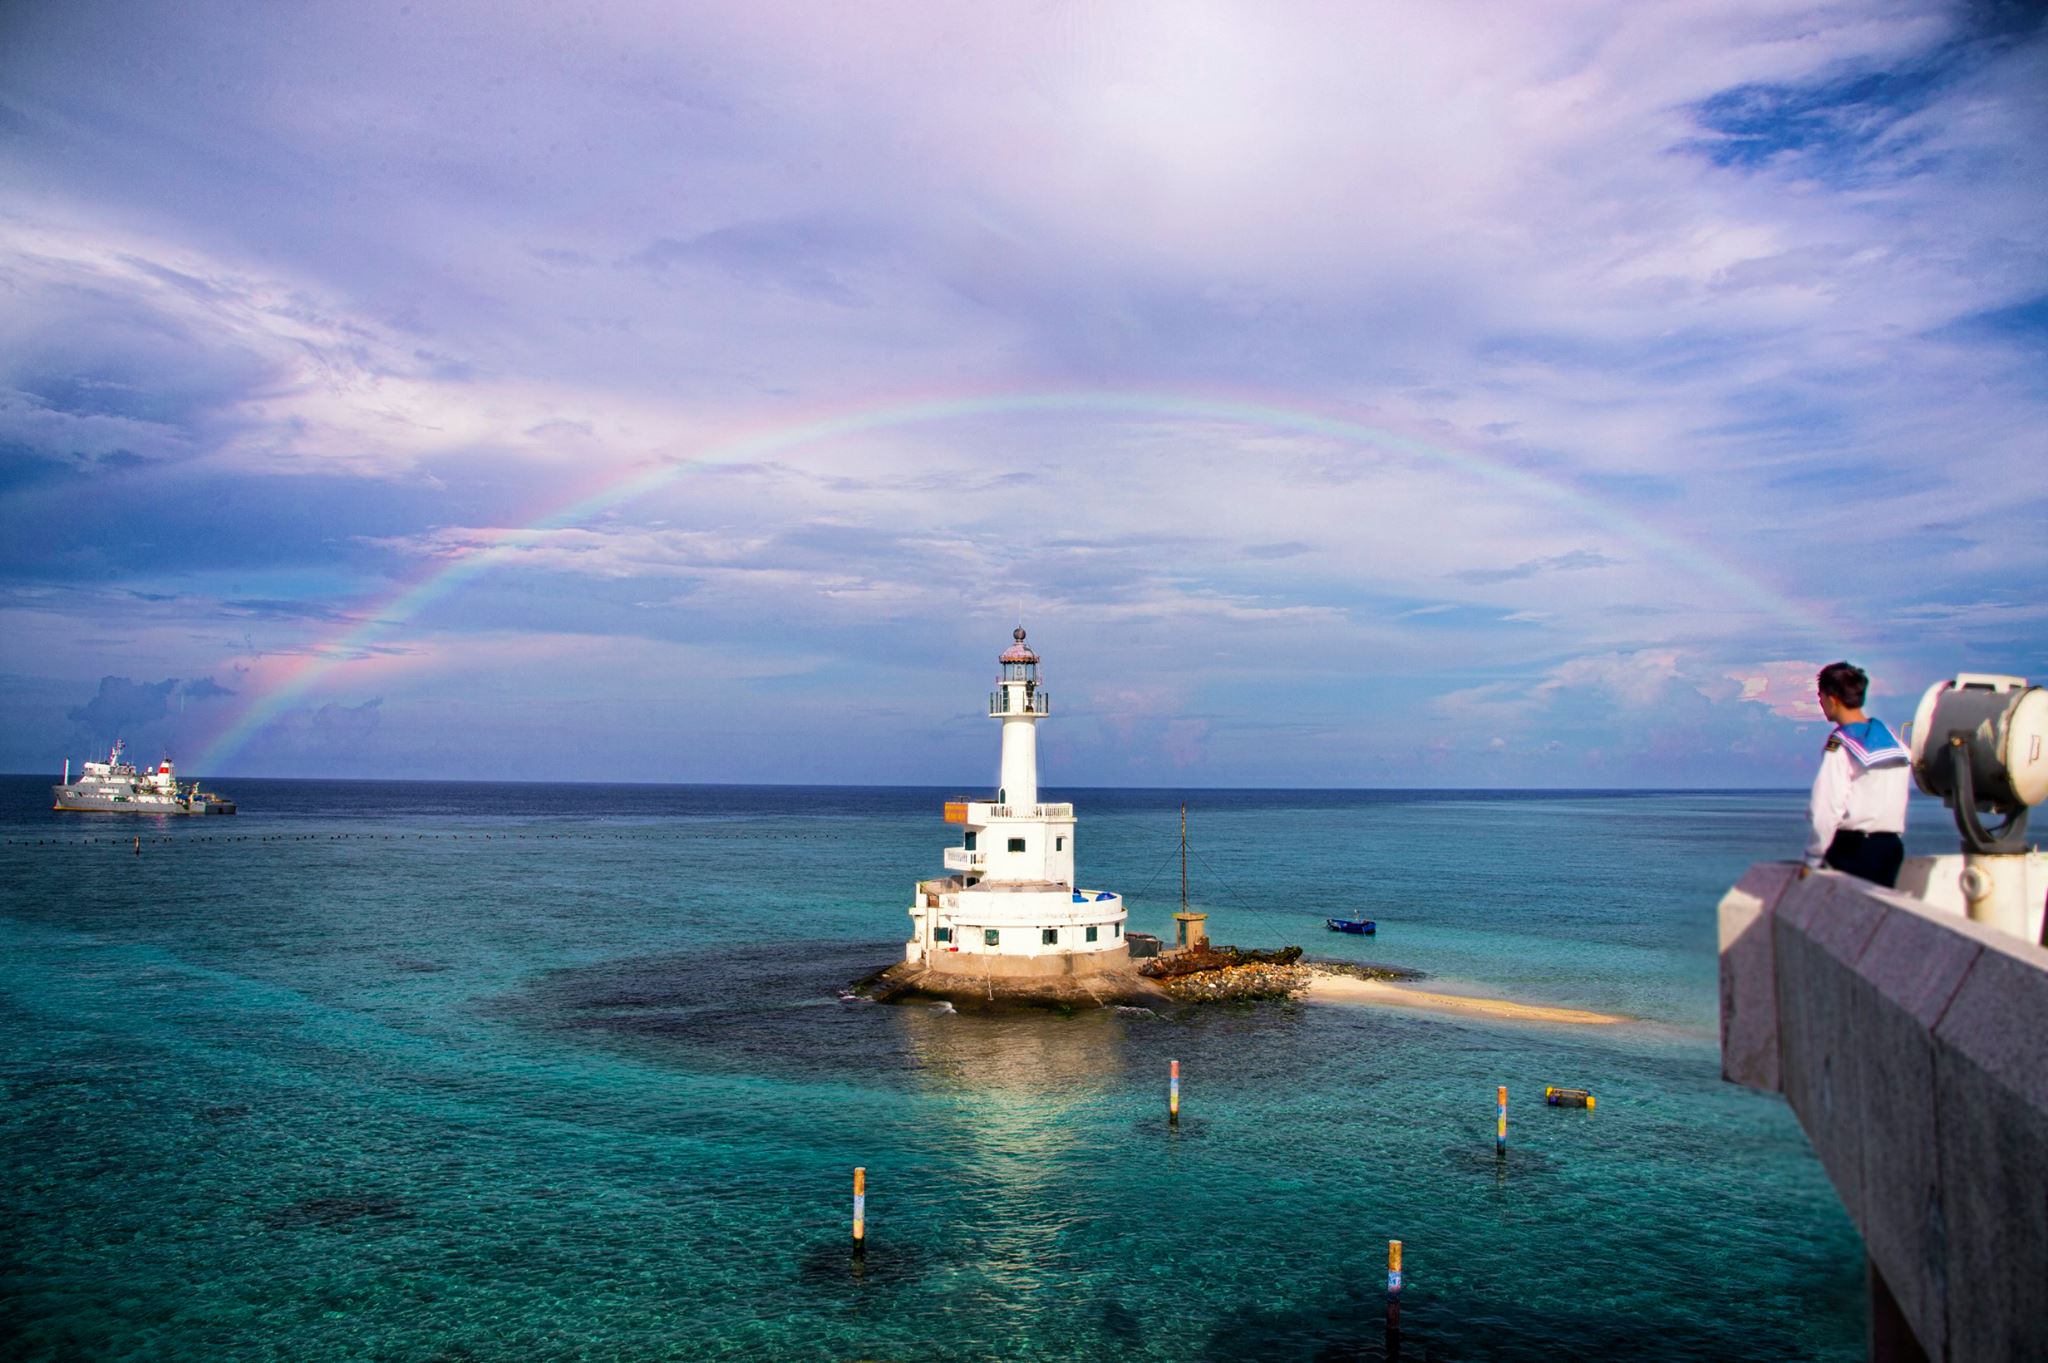 Khám phá vẻ đẹp biển đảo ở “Trường Sa – Nơi ta đến”